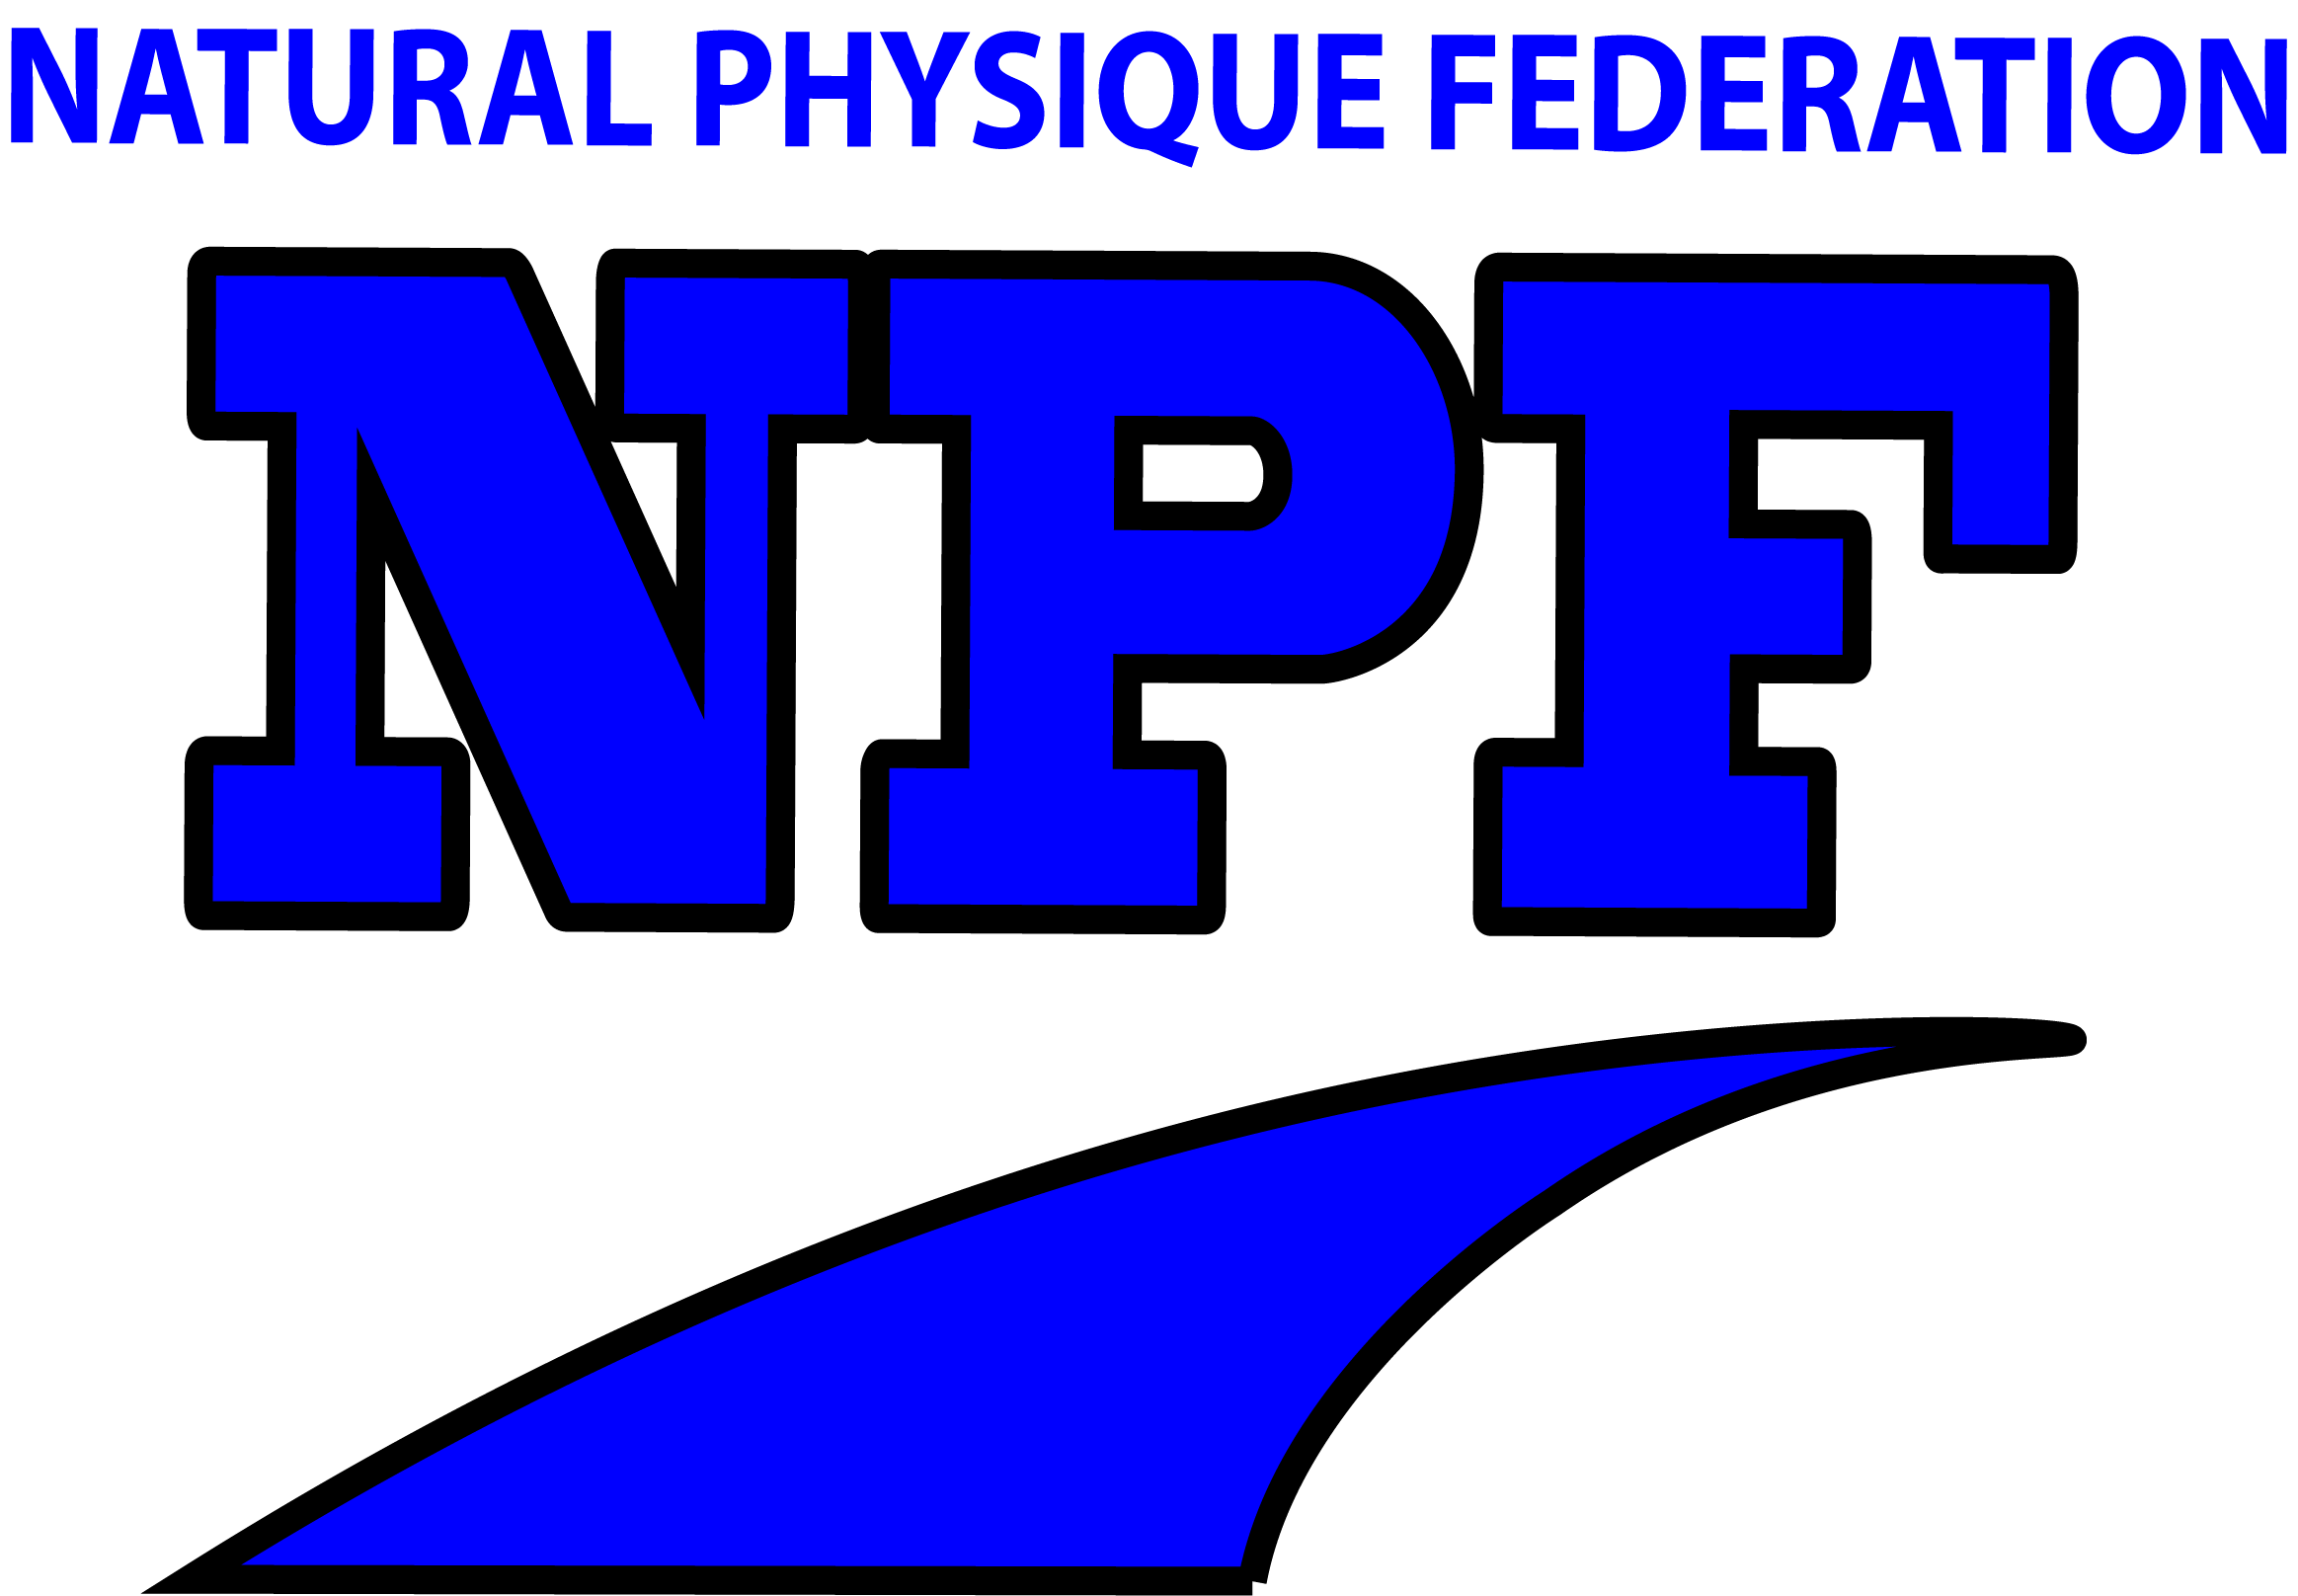 www.NaturalPhysiqueFederation.com